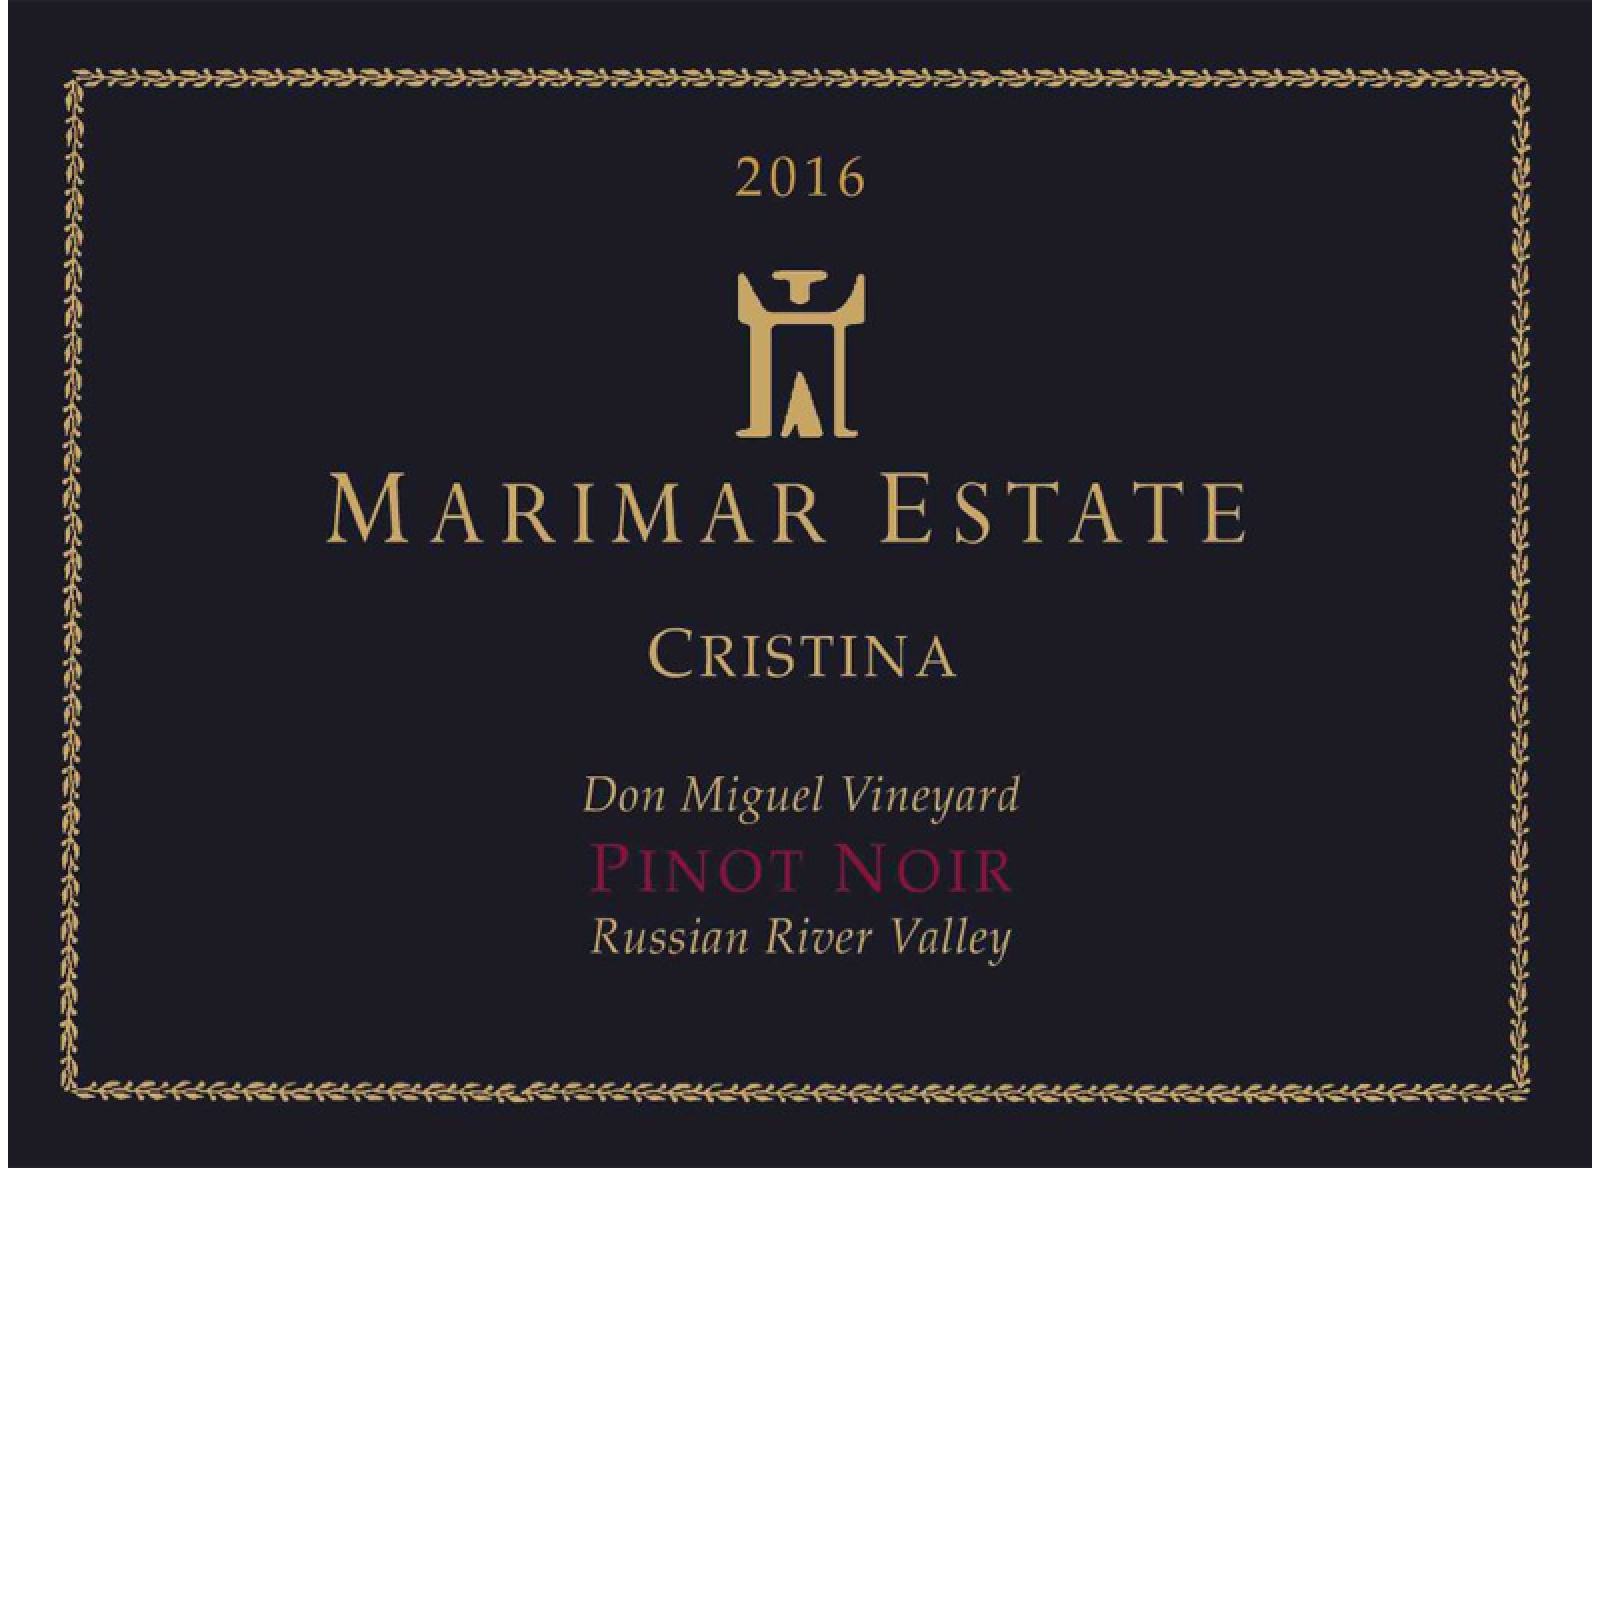 2017 Marimar Estate Winery Cristina Pinot Noir